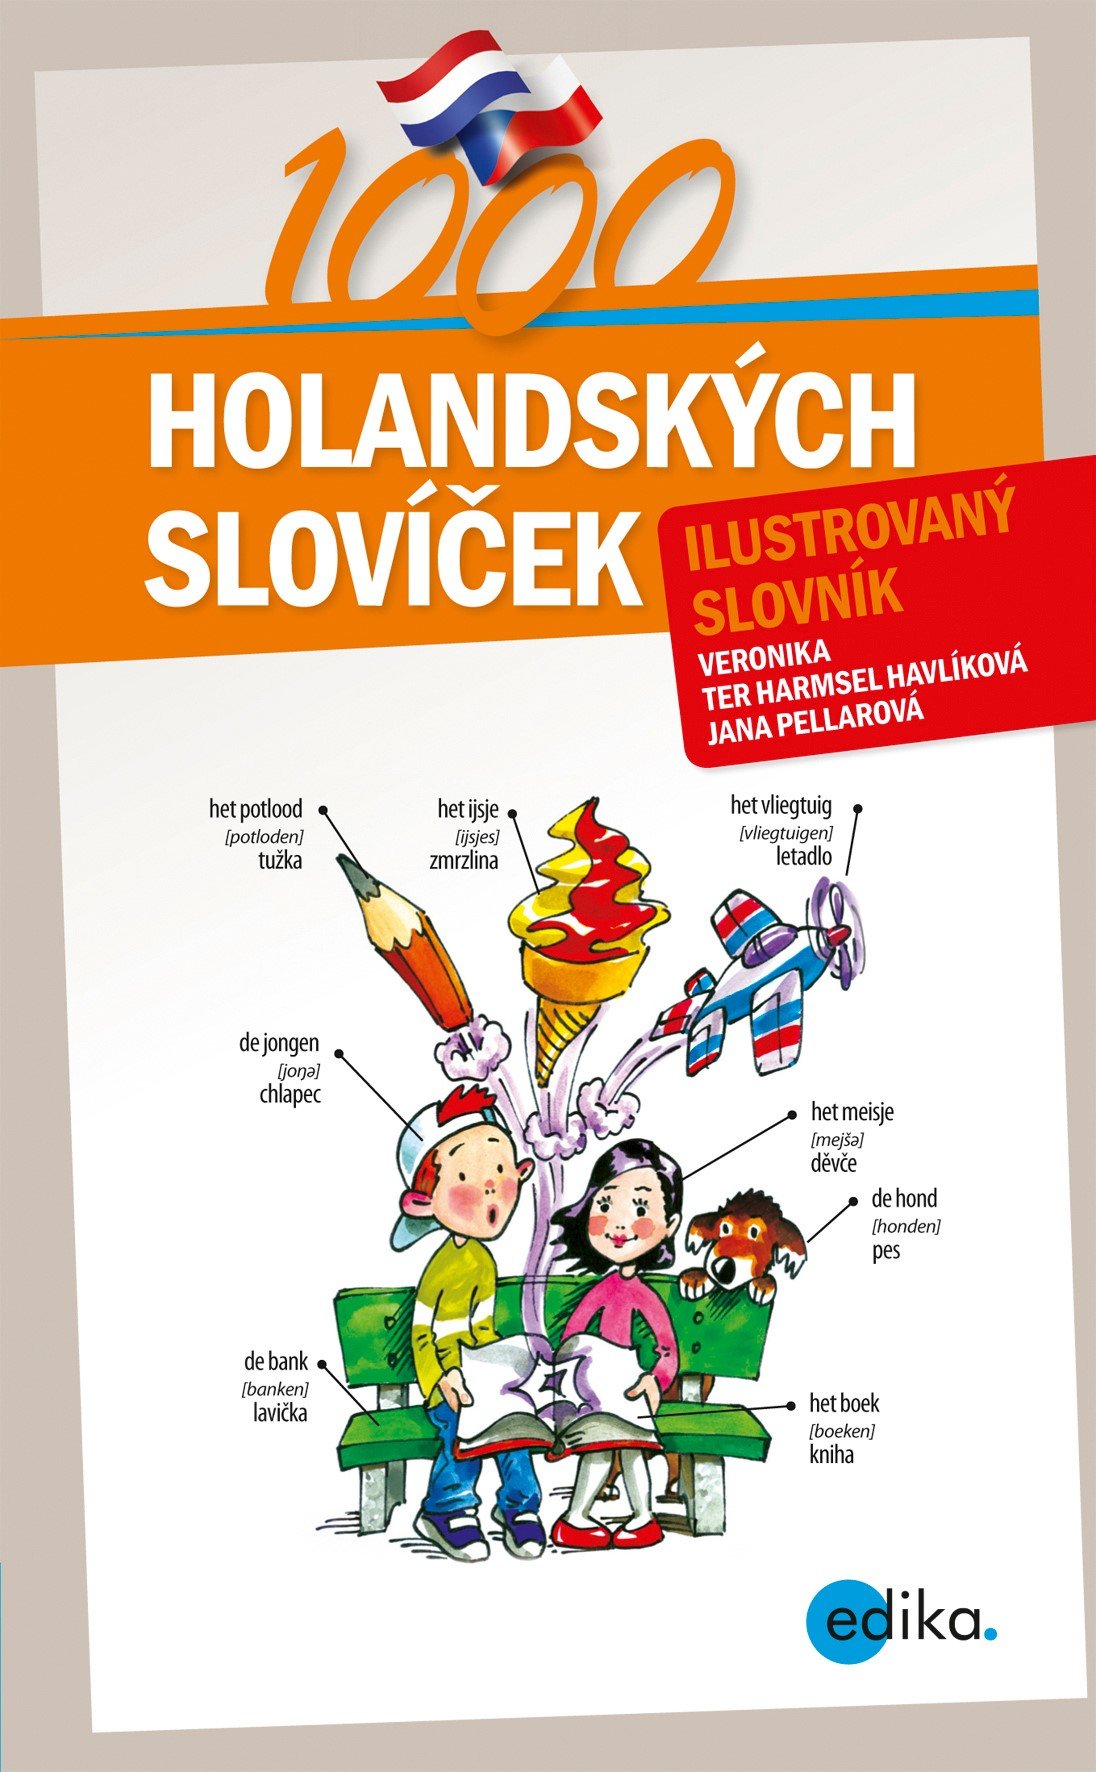 1000 holandských slovíček - Ilustrovaný slovník - autorů kolektiv